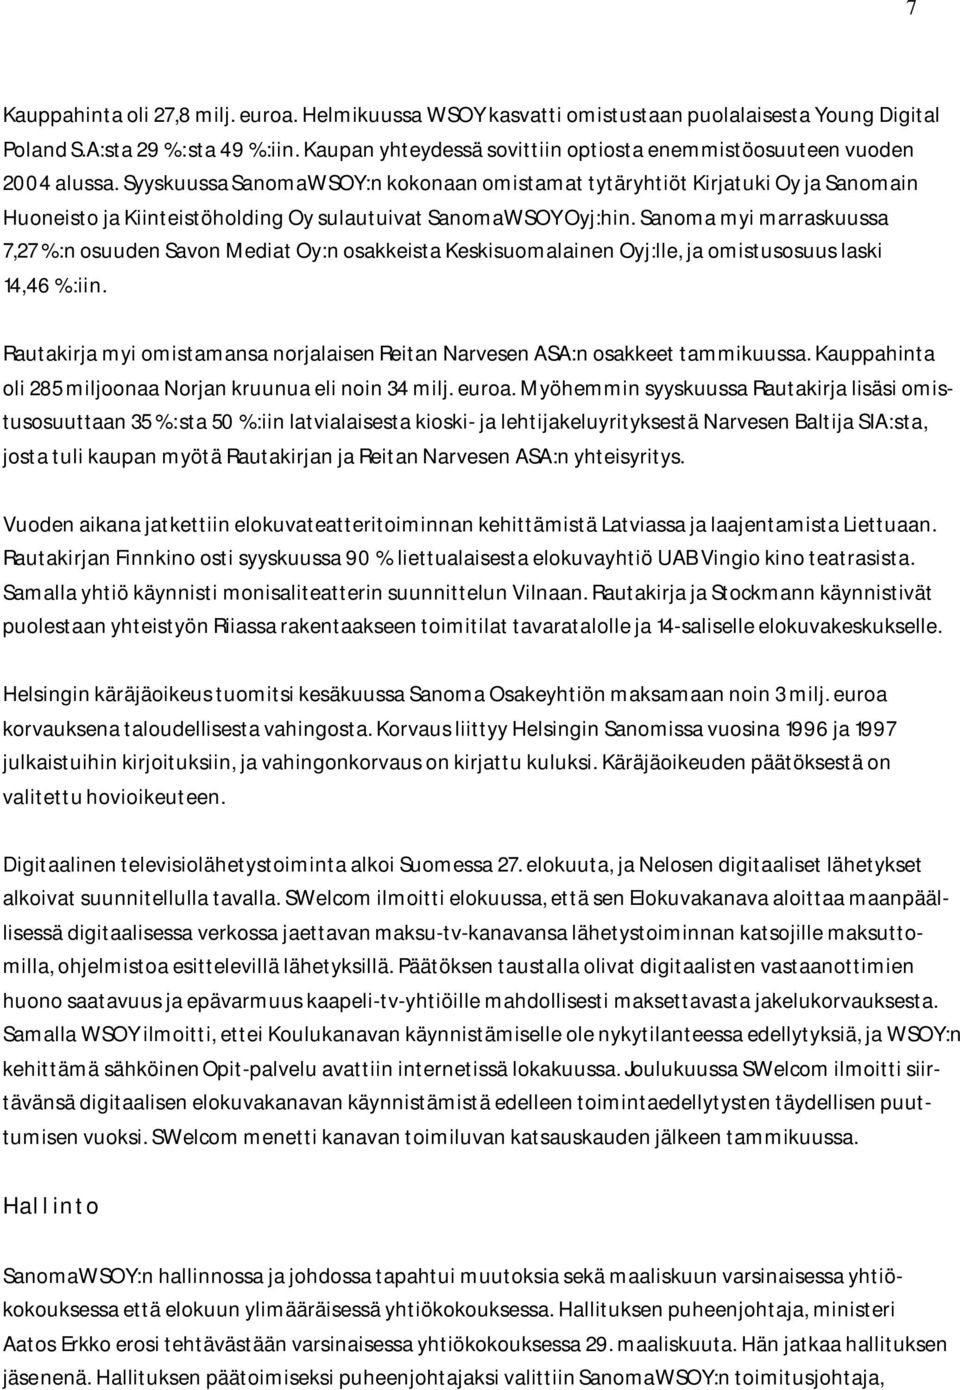 Syyskuussa SanomaWSOY:n kokonaan omistamat tytäryhtiöt Kirjatuki Oy ja Sanomain Huoneisto ja Kiinteistöholding Oy sulautuivat SanomaWSOY Oyj:hin.